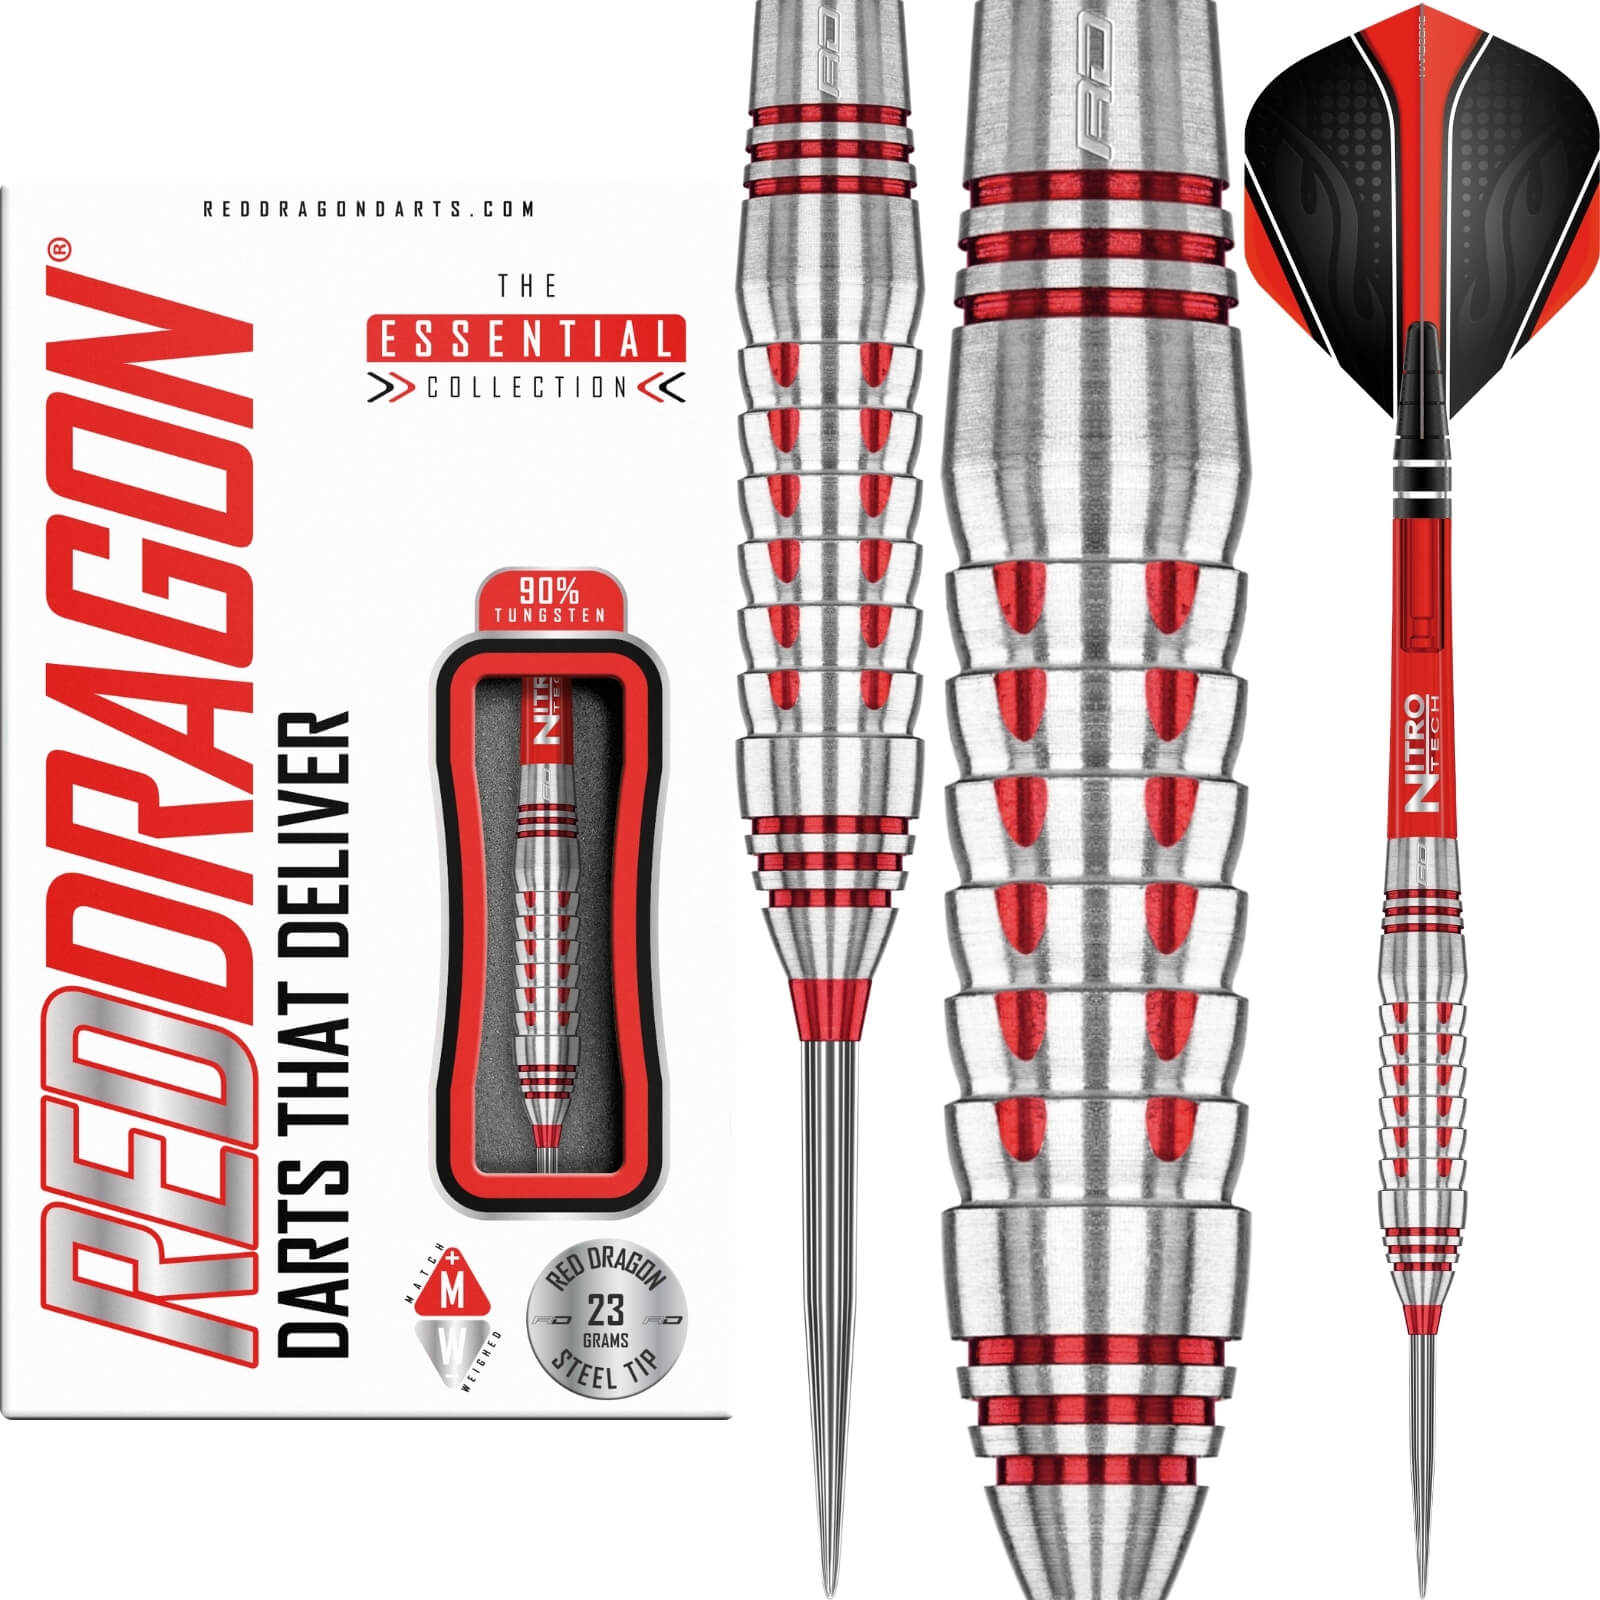 Darts - Red Dragon - Firebird Darts - Steel Tip - 90% Tungsten - 23g 25g 